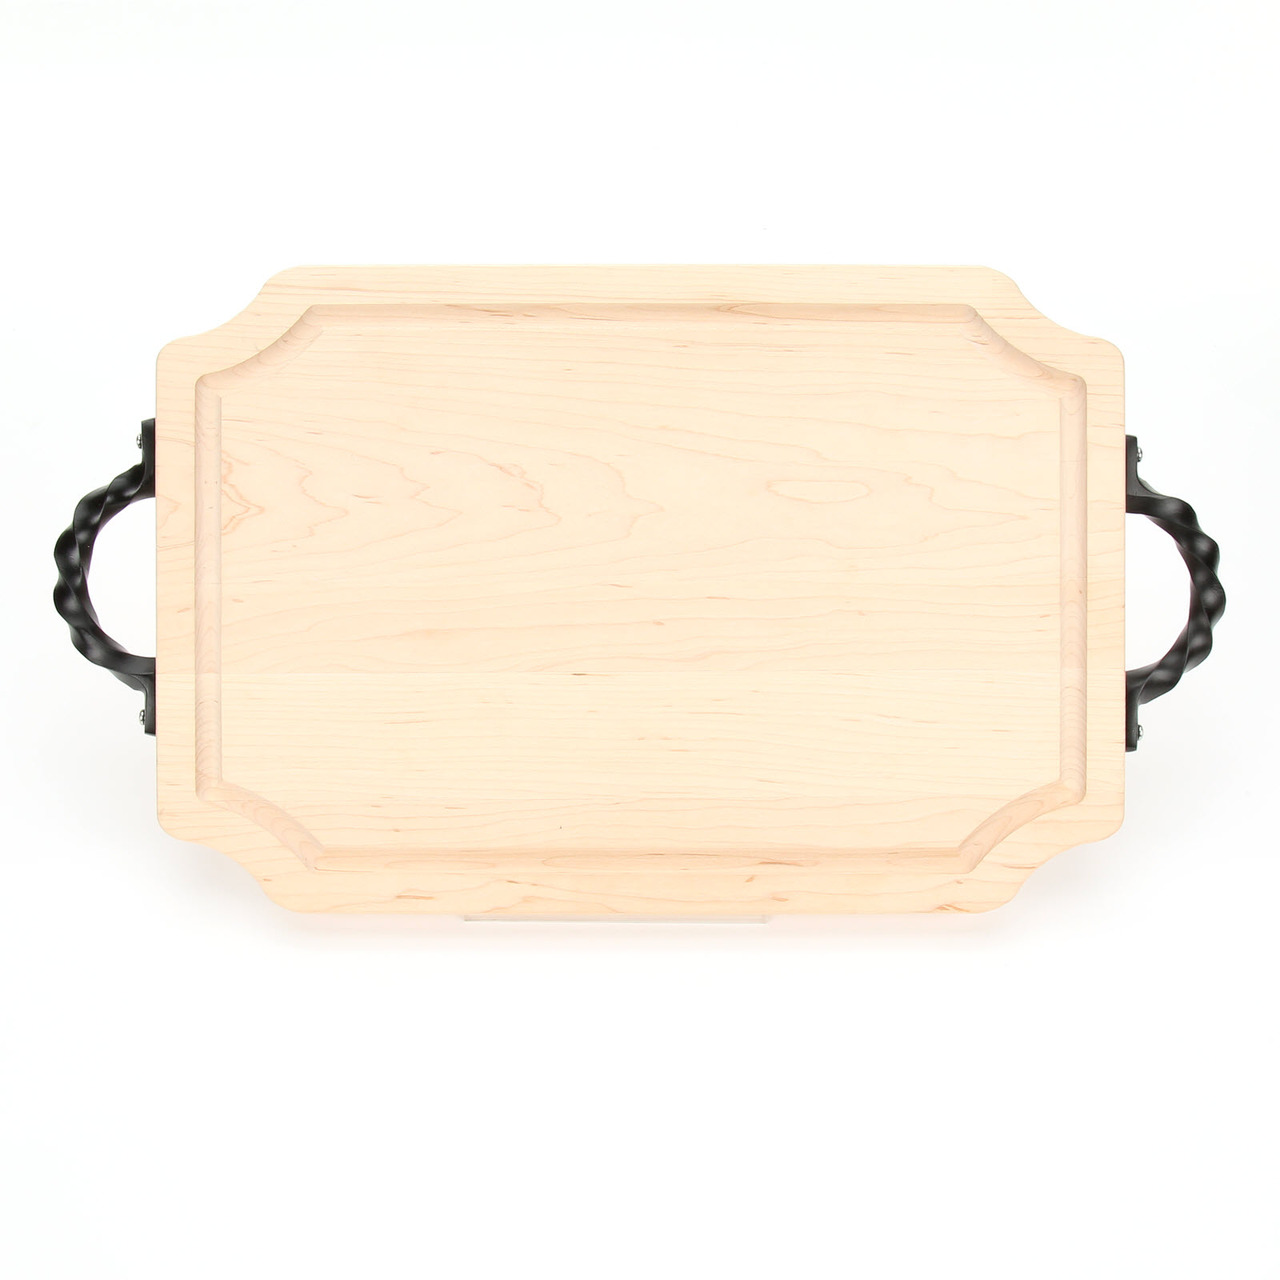 BigWood Boards Selwood 12 x 18 Cutting Board - Maple (w/ Twisted Handles)